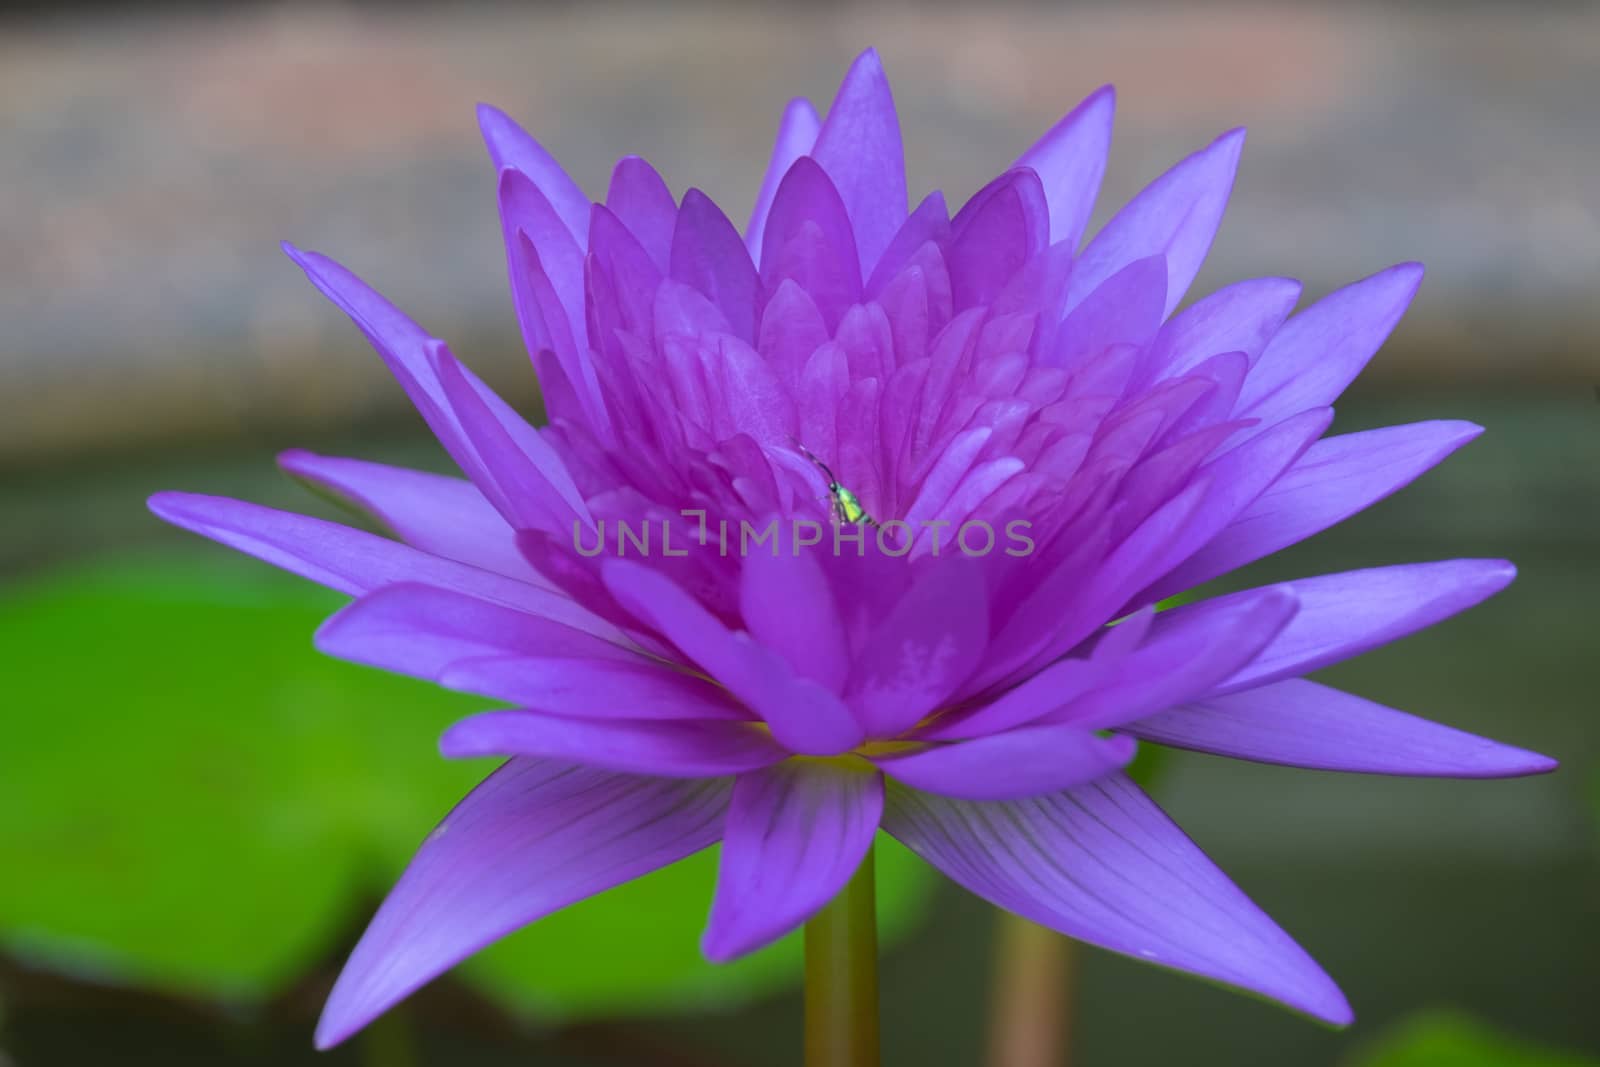 One purple lotus flower blooming